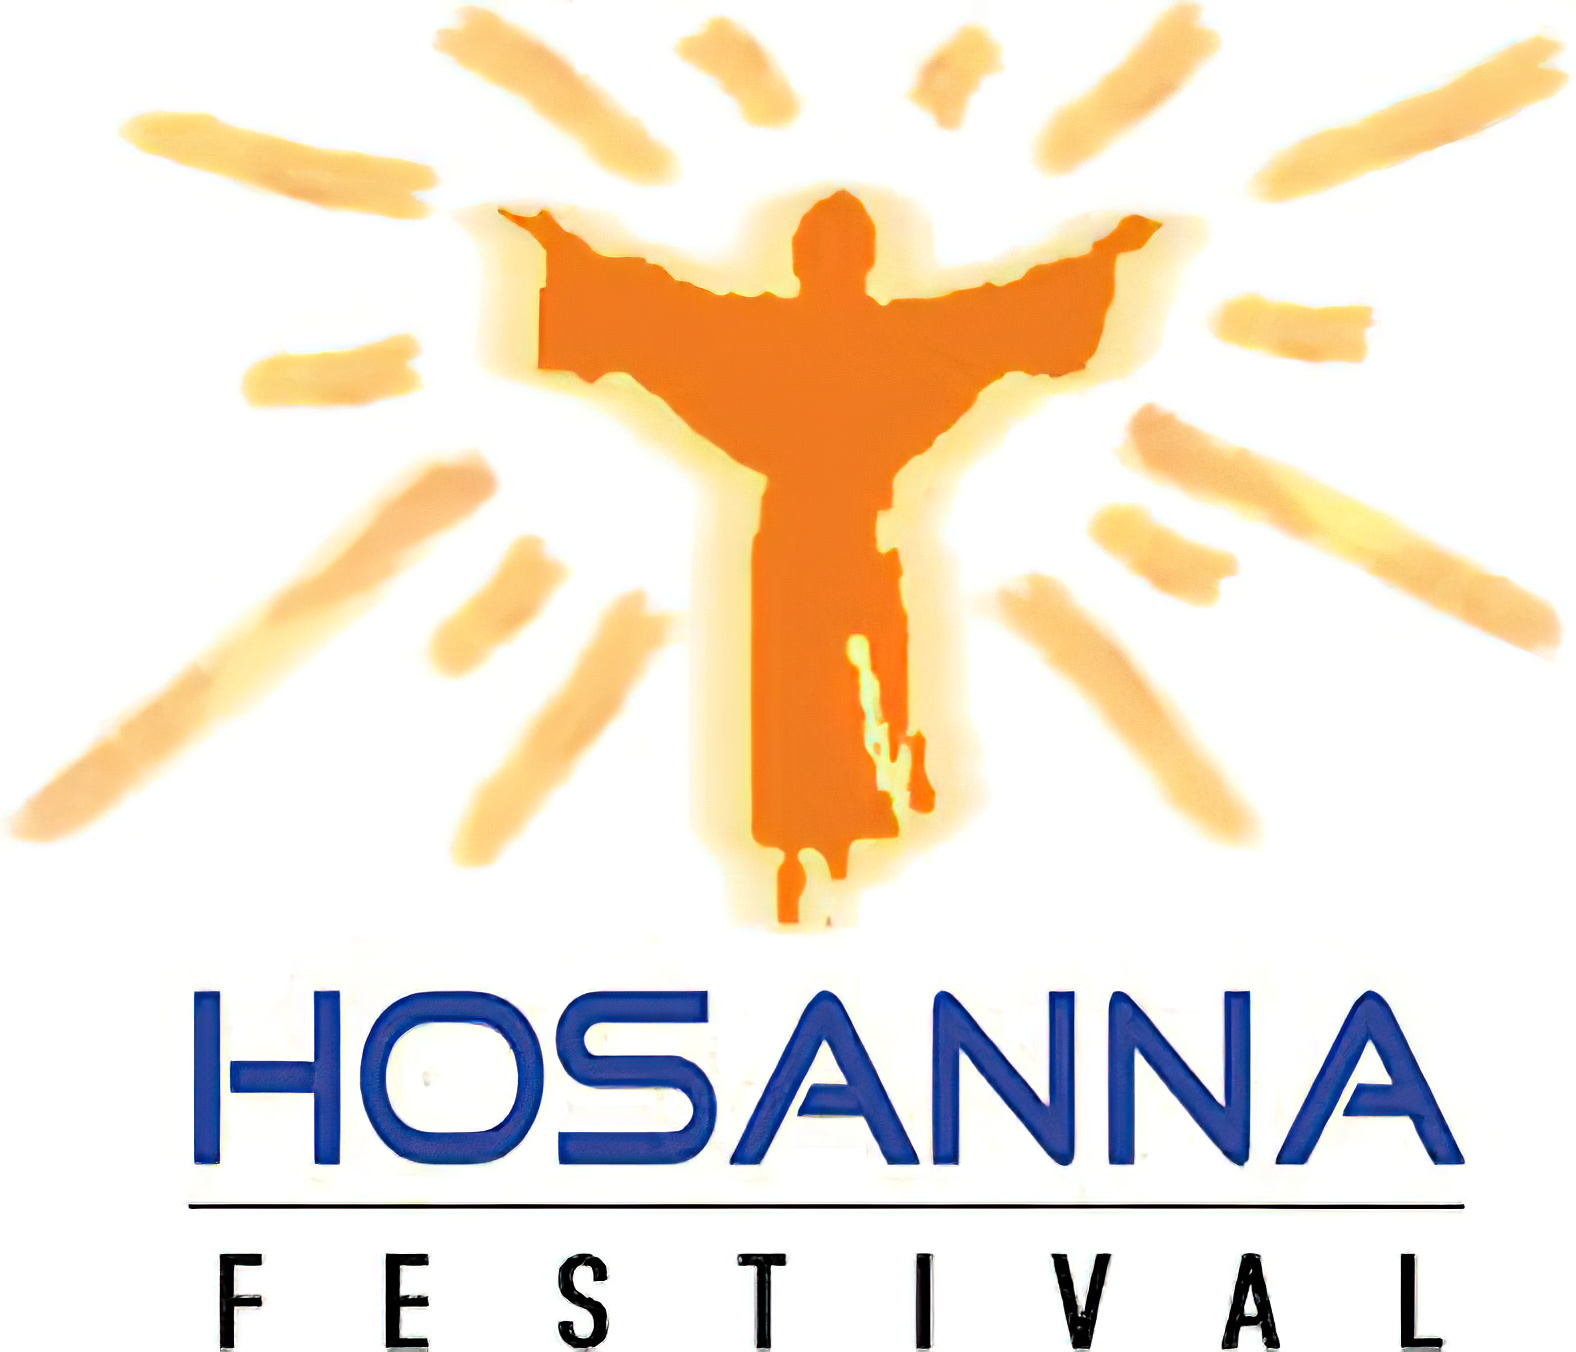 Hosanna Festival